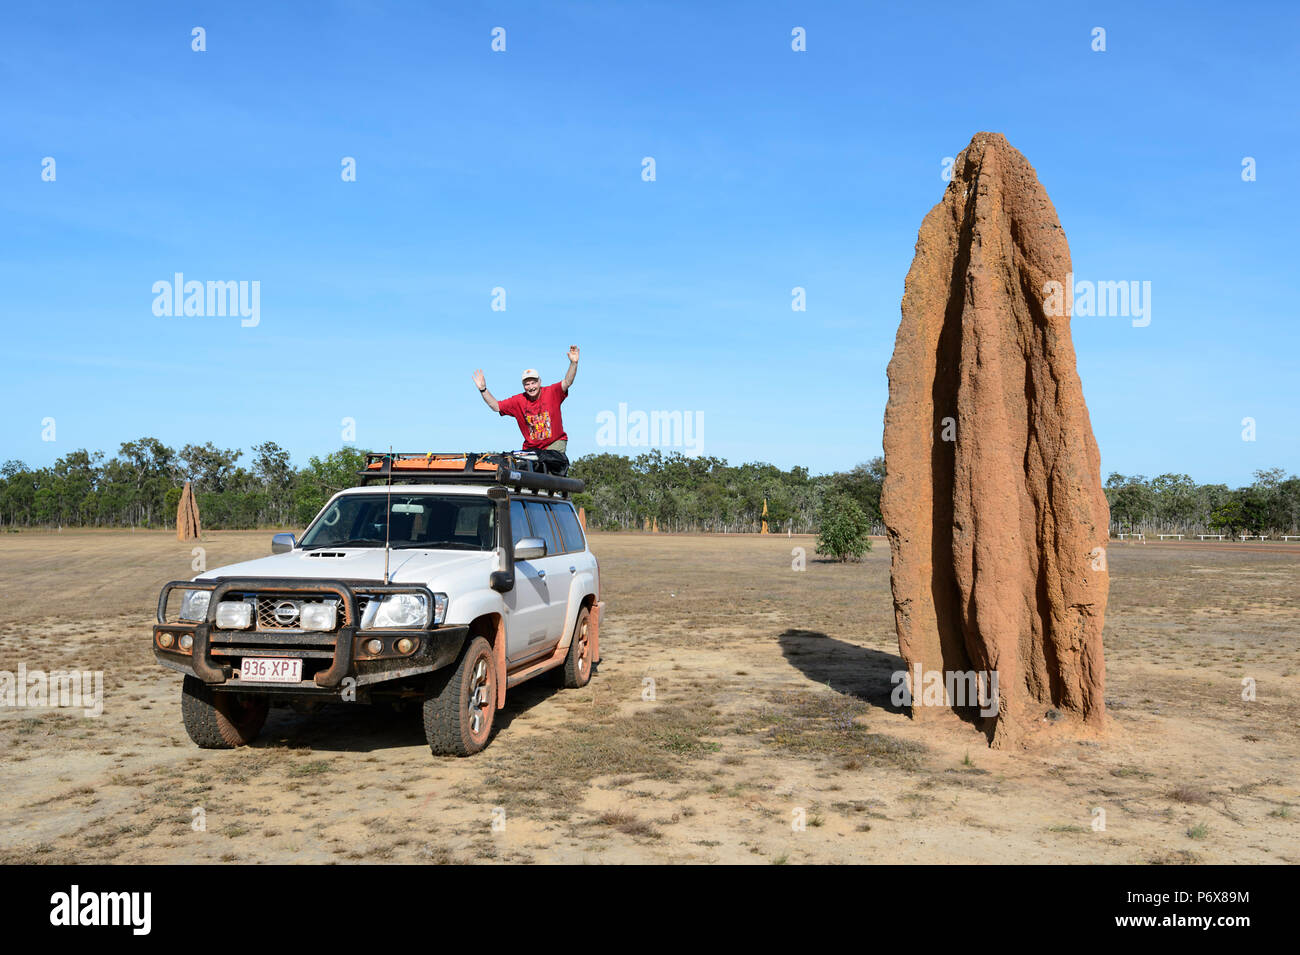 Touristische winken vom Dach seines 4X4 Nissan Patrol, stehen neben einem riesigen Termitenhügel Damm, Cape York Halbinsel, Far North Queensland, FNQ, QLD, Australien Stockfoto